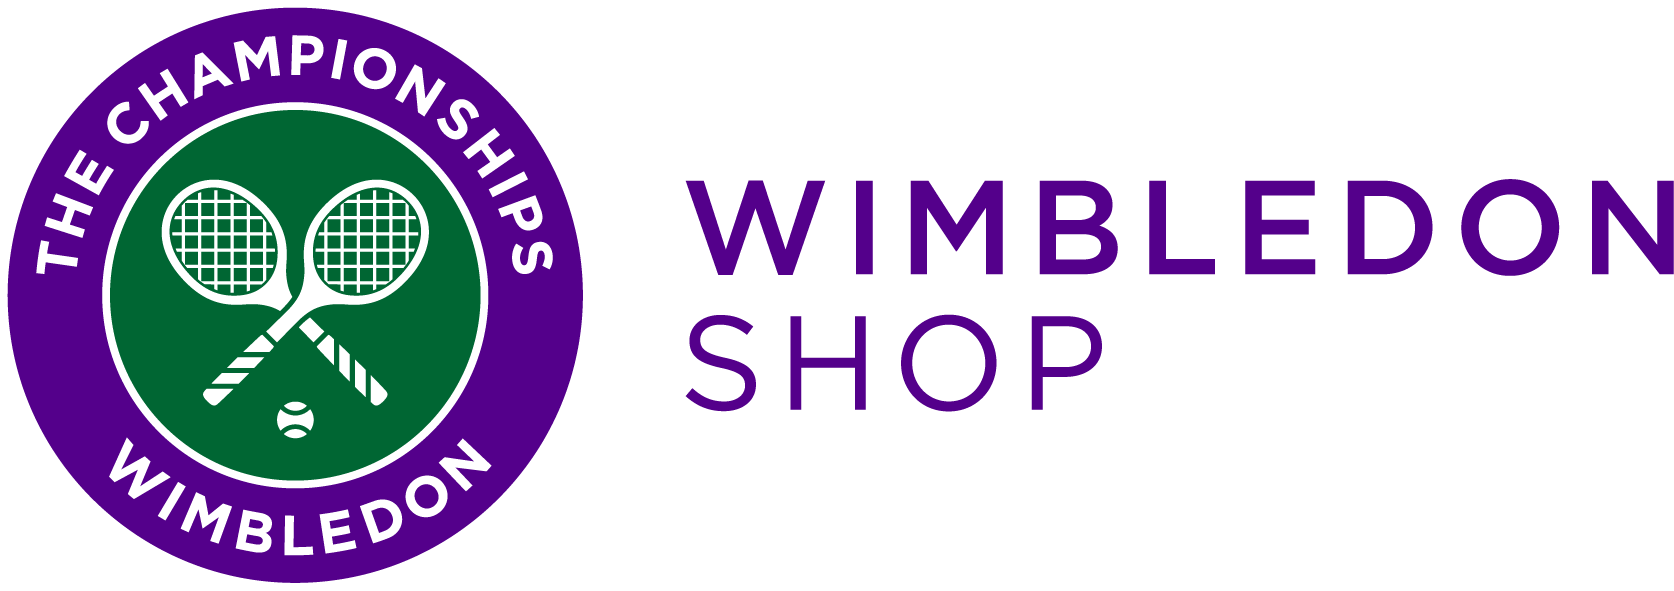 wimbledon official shop